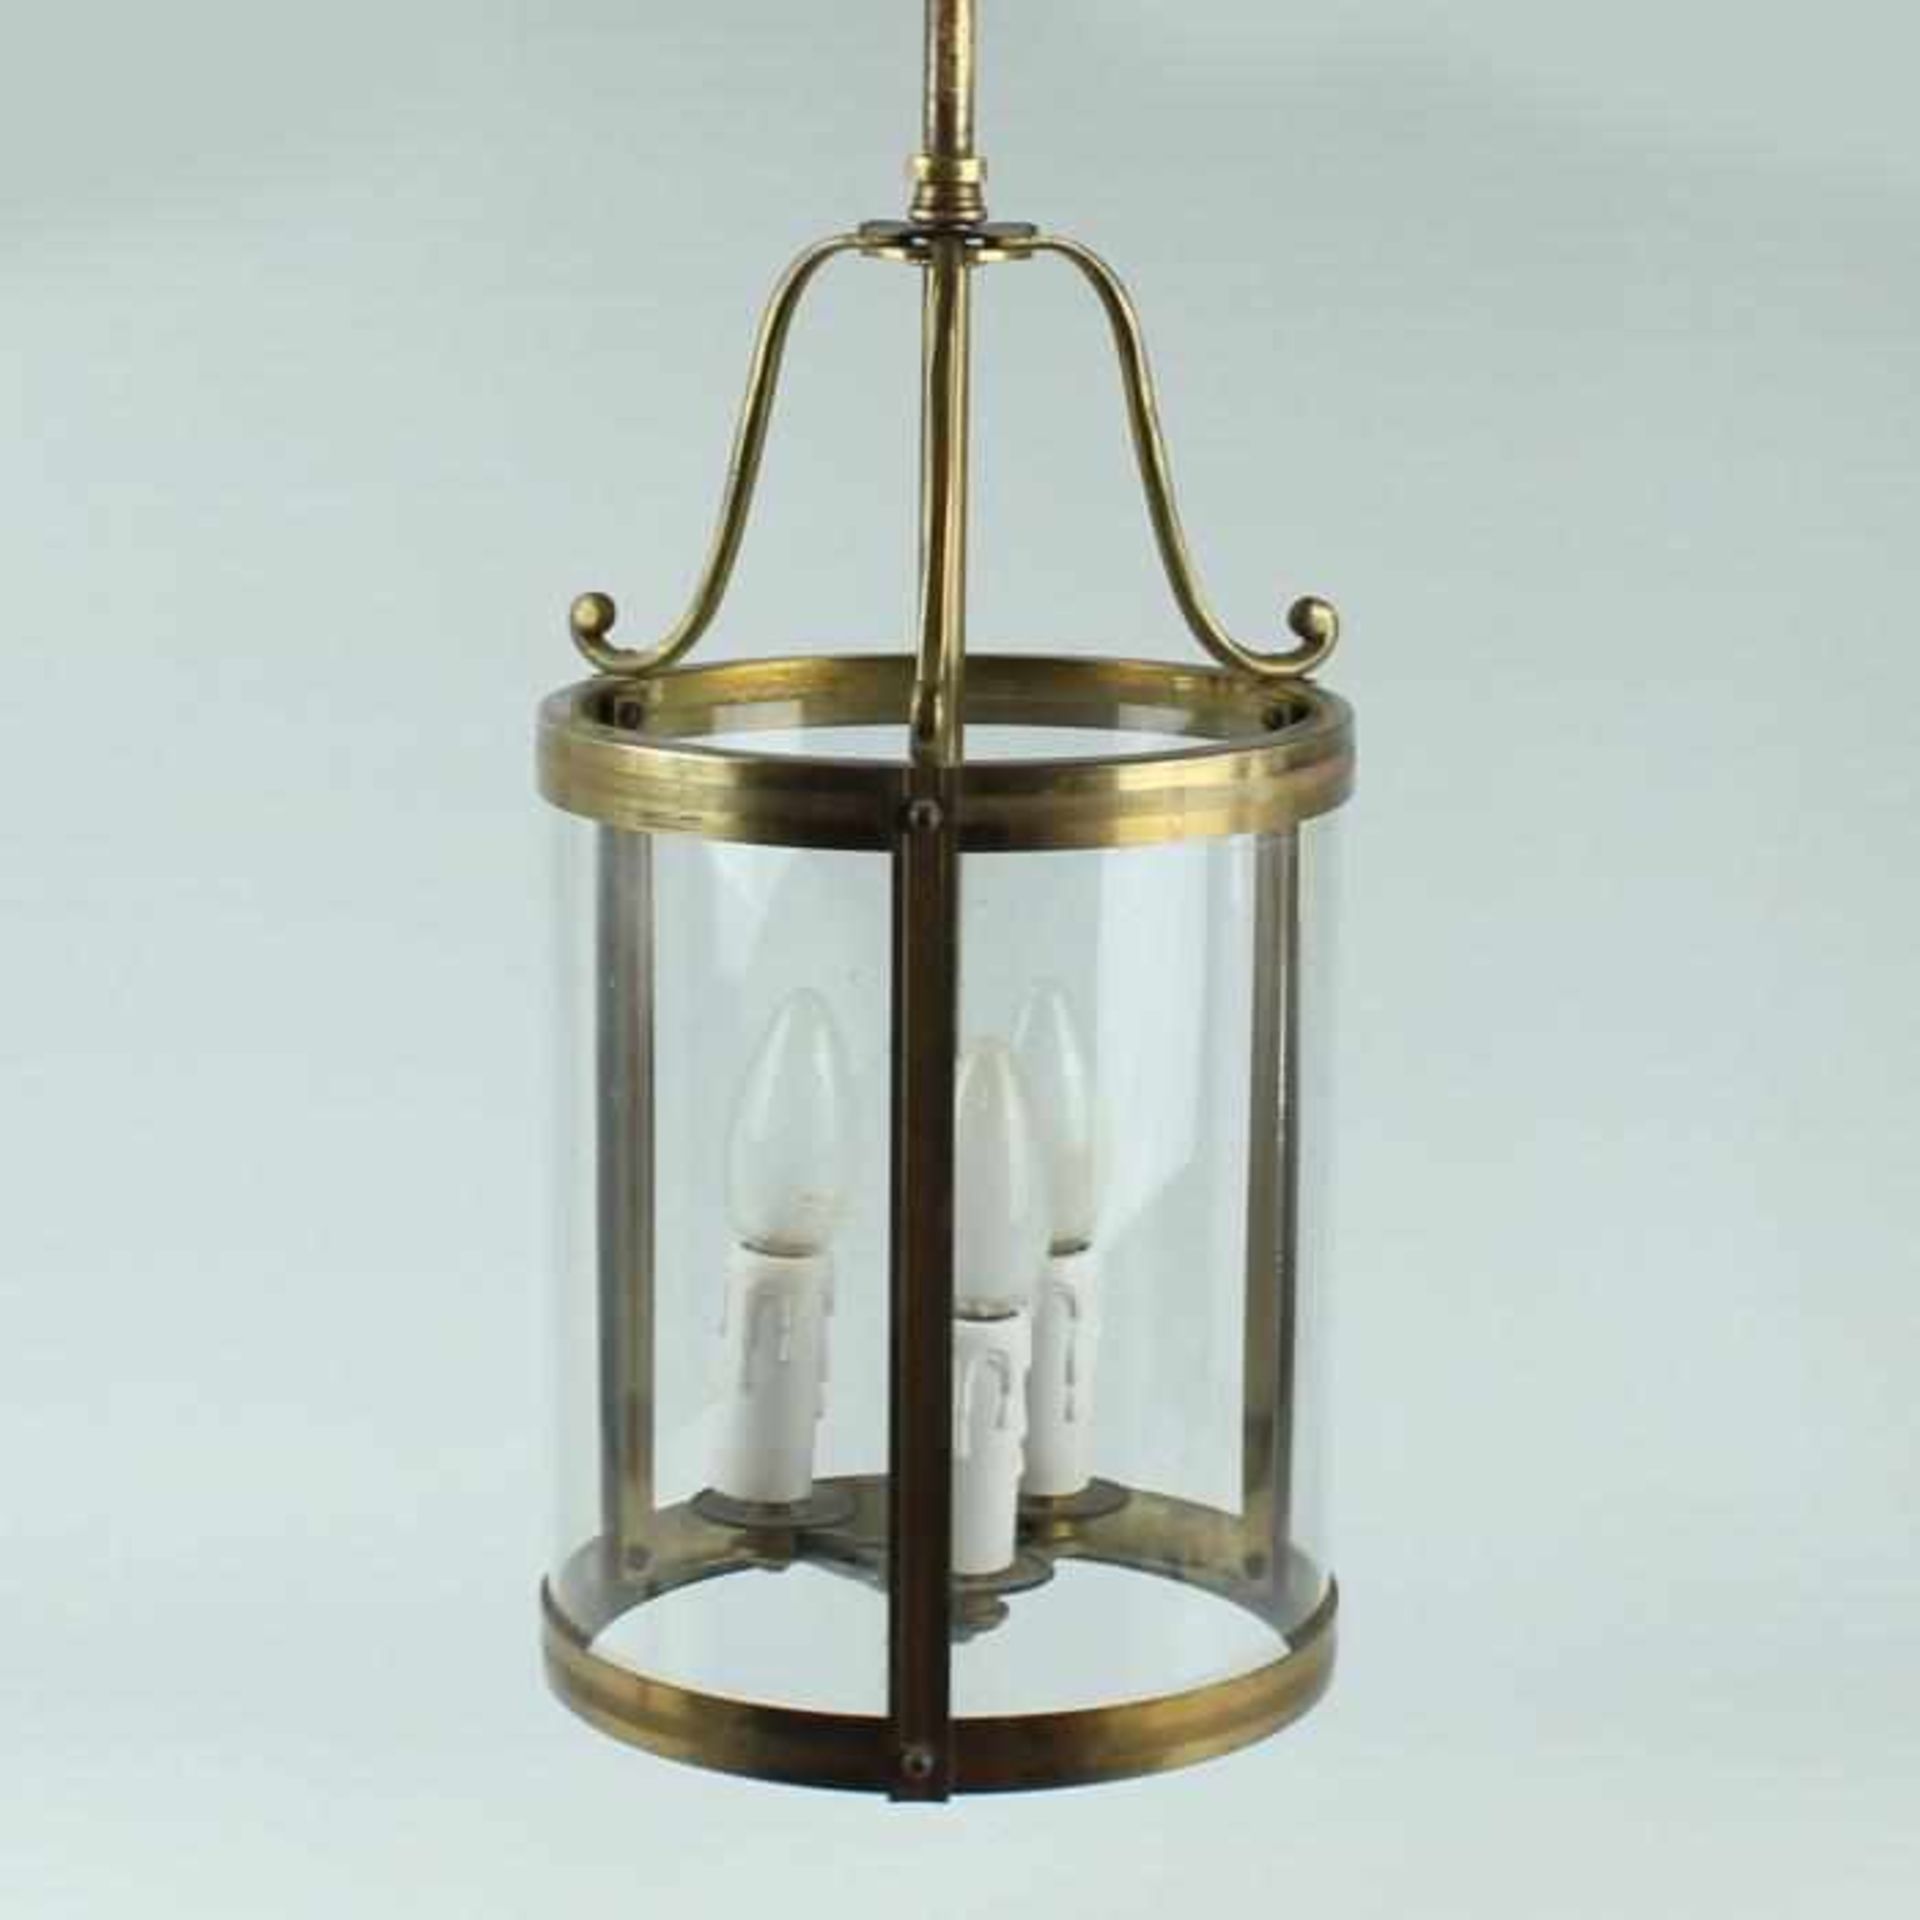 DeckenlampeMessing/Glas, 3-flammig, Laternenform, zylindrischer Korpus, allseitig verglast,